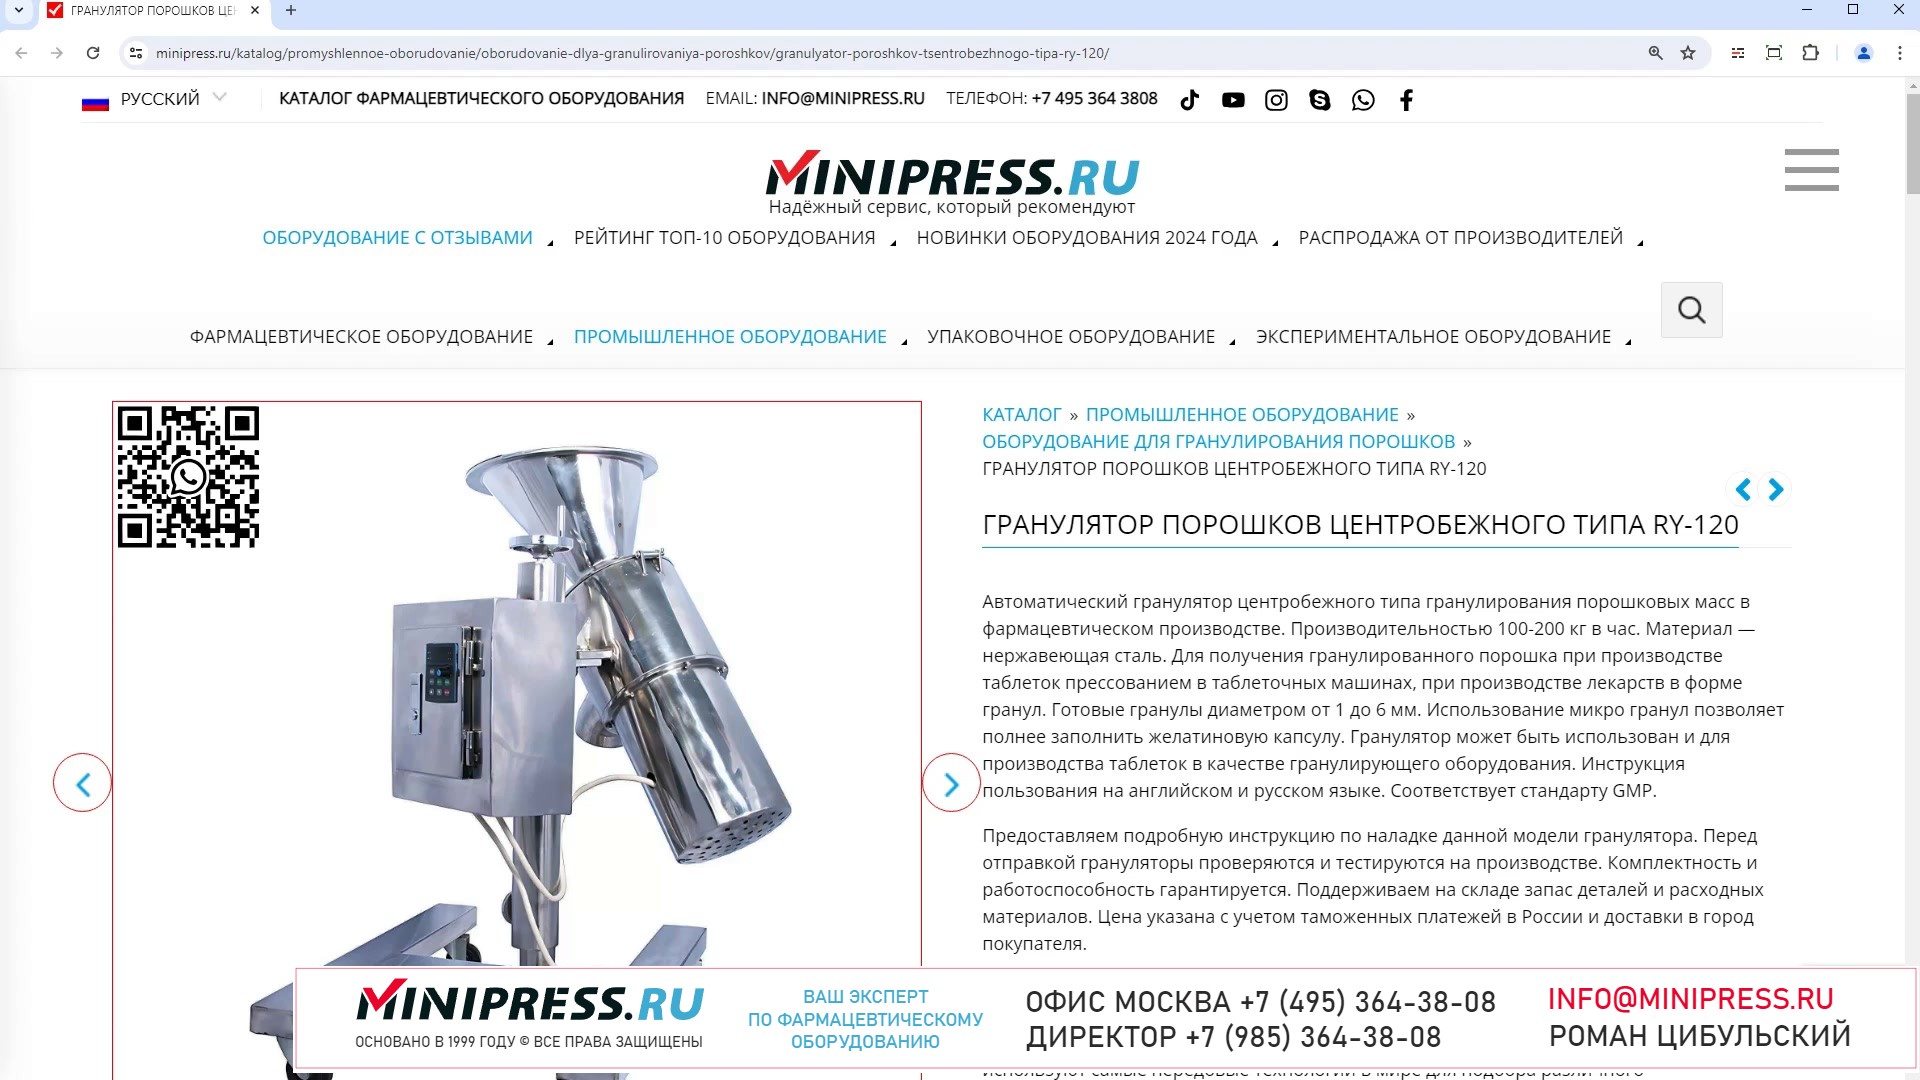 Minipress.ru Гранулятор порошков центробежного типа RY-120